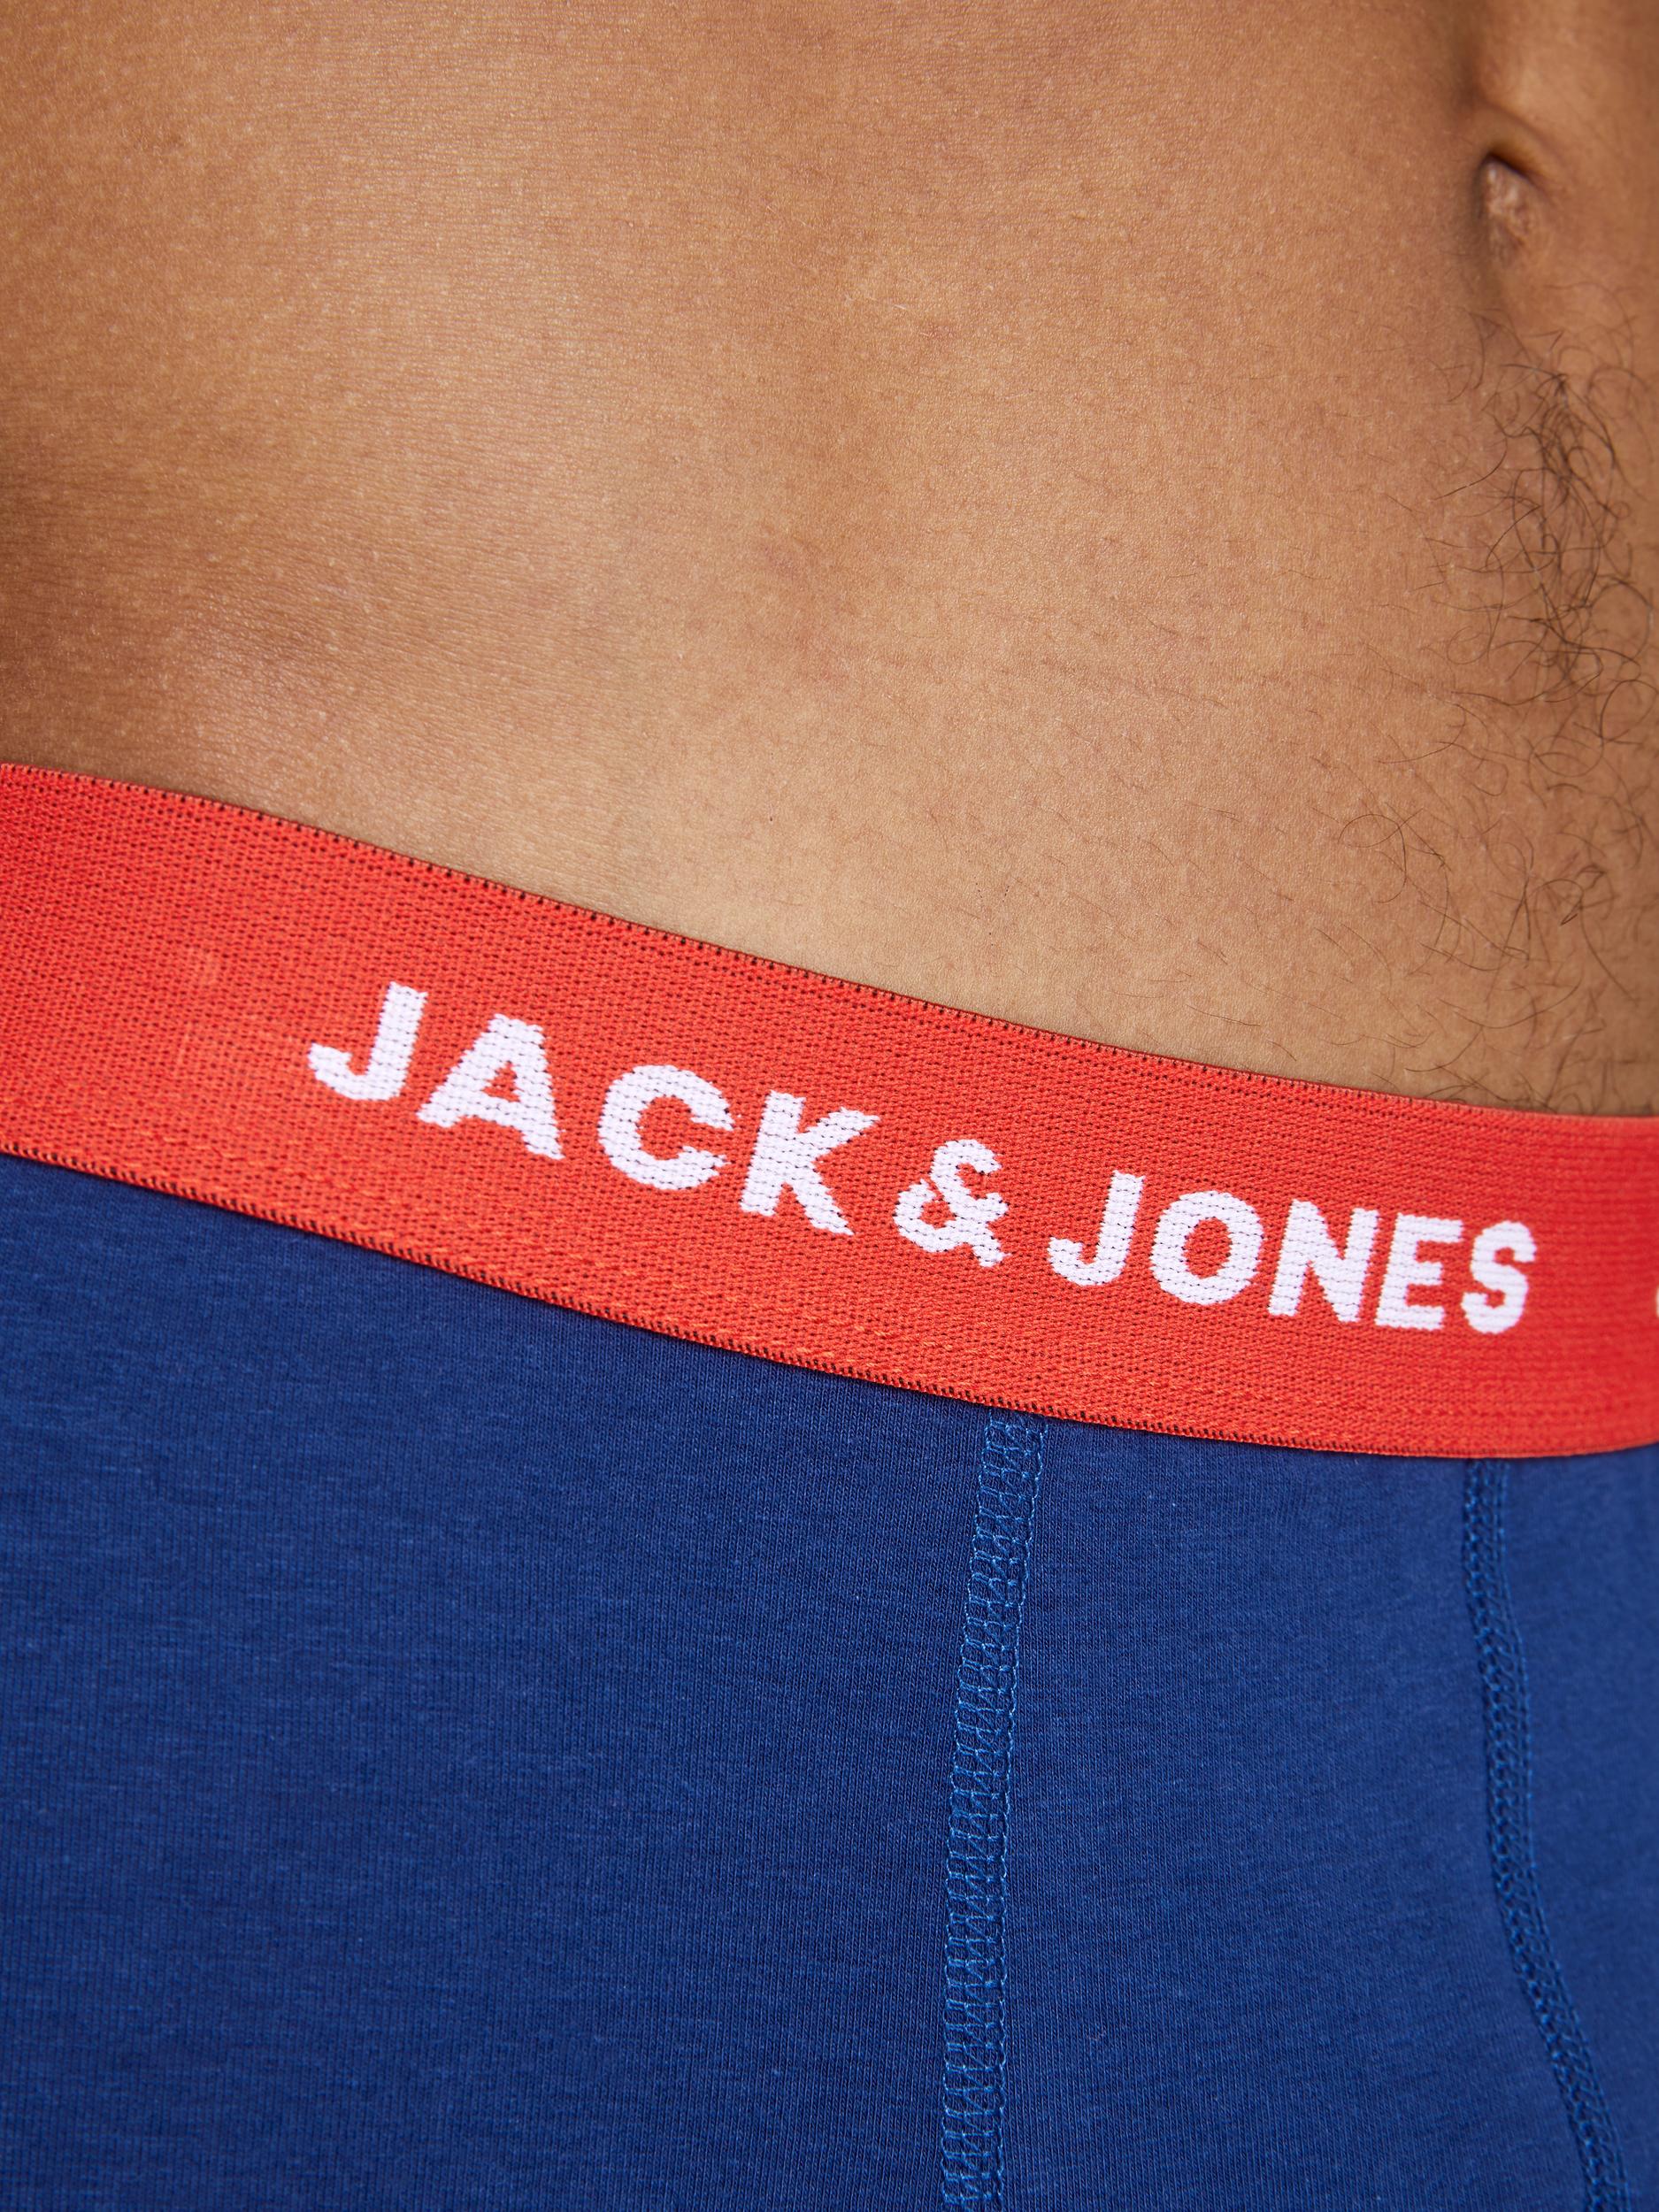 JACK & JONES Bokserki w kolorze Czarny, Ciemny Niebieskim 